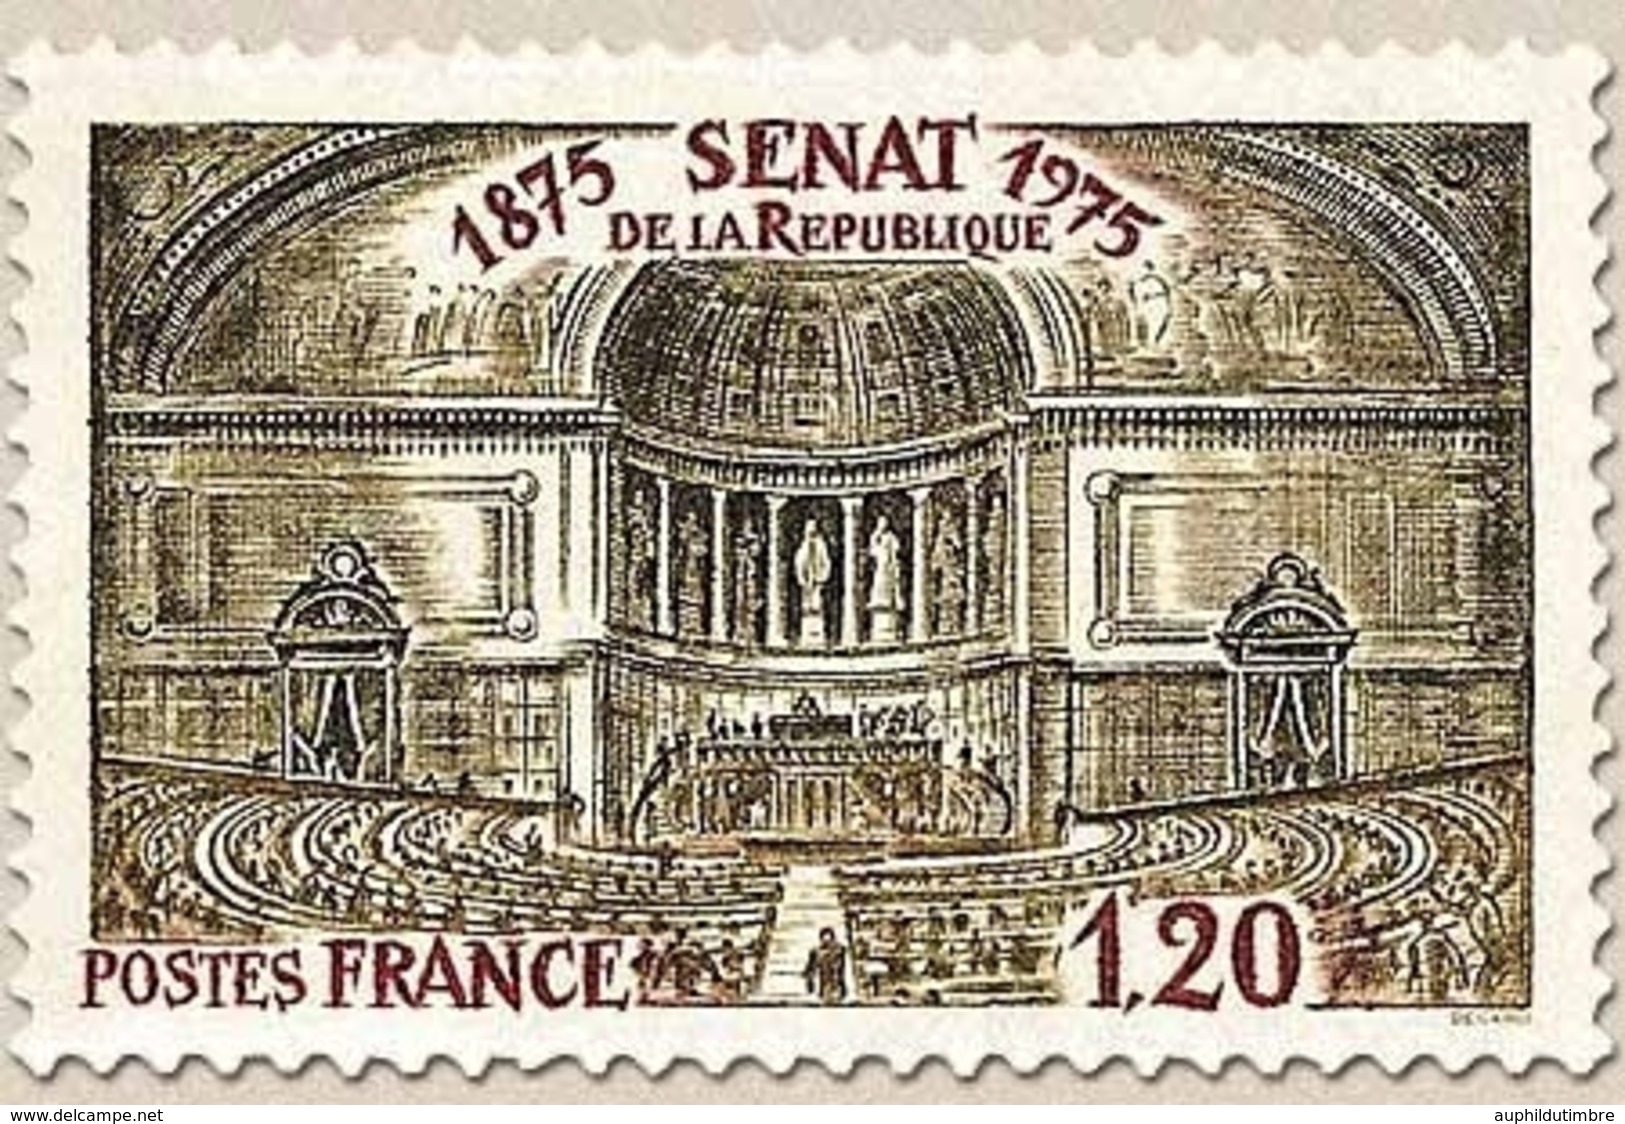 Centenaire Du Sénat De La République. 1f.20 Gris-olive Et Carmin Y1843 - Unused Stamps